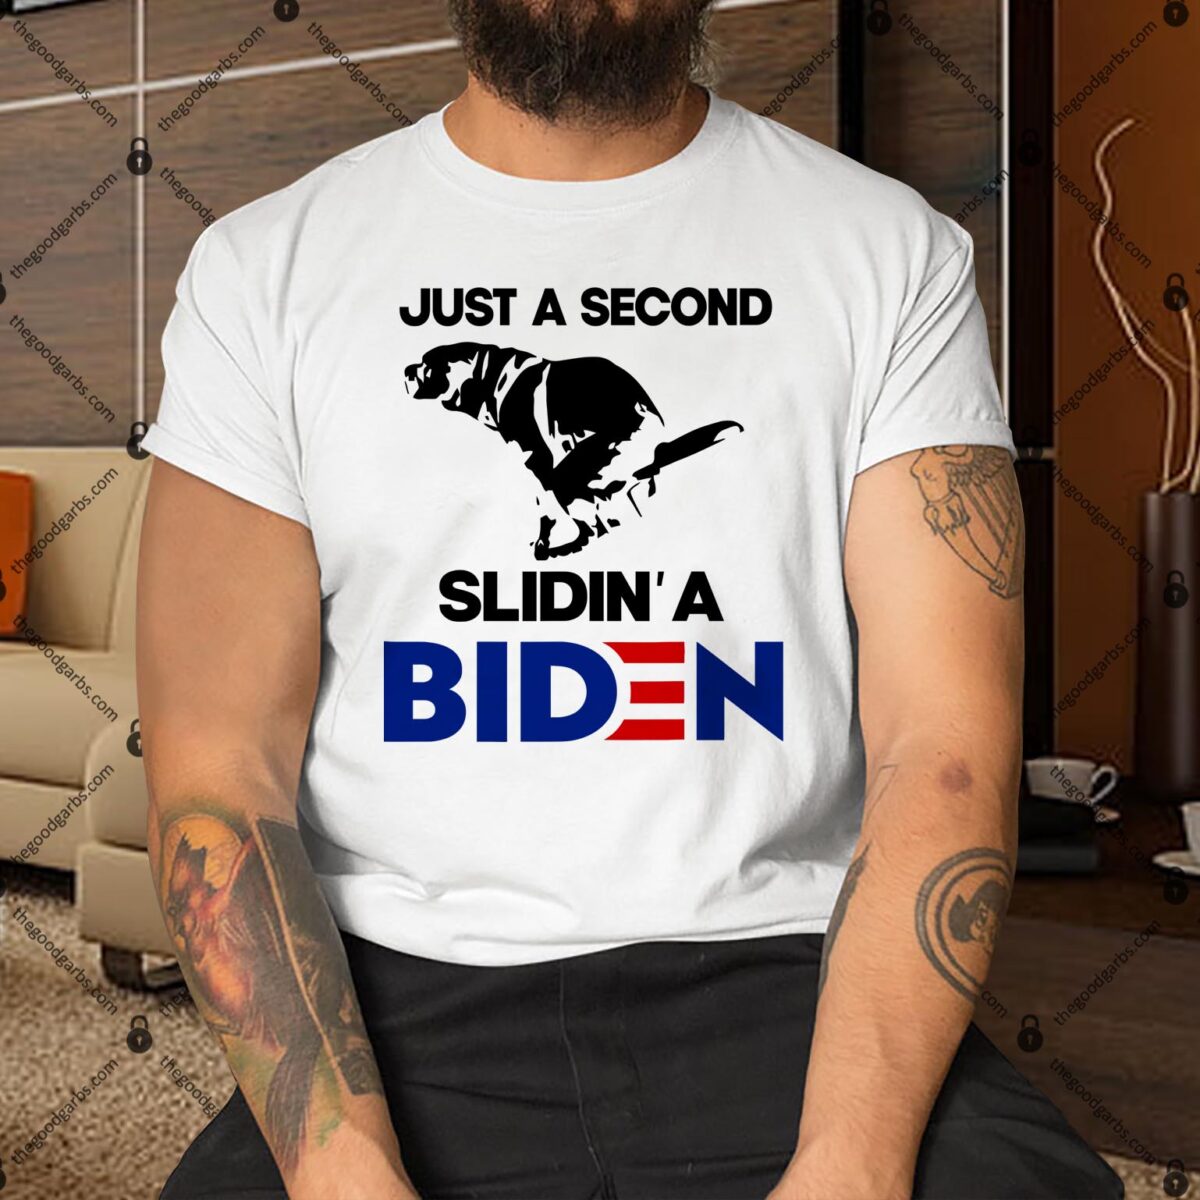 Just A Second Slidin' A Biden Funny Political Shirt